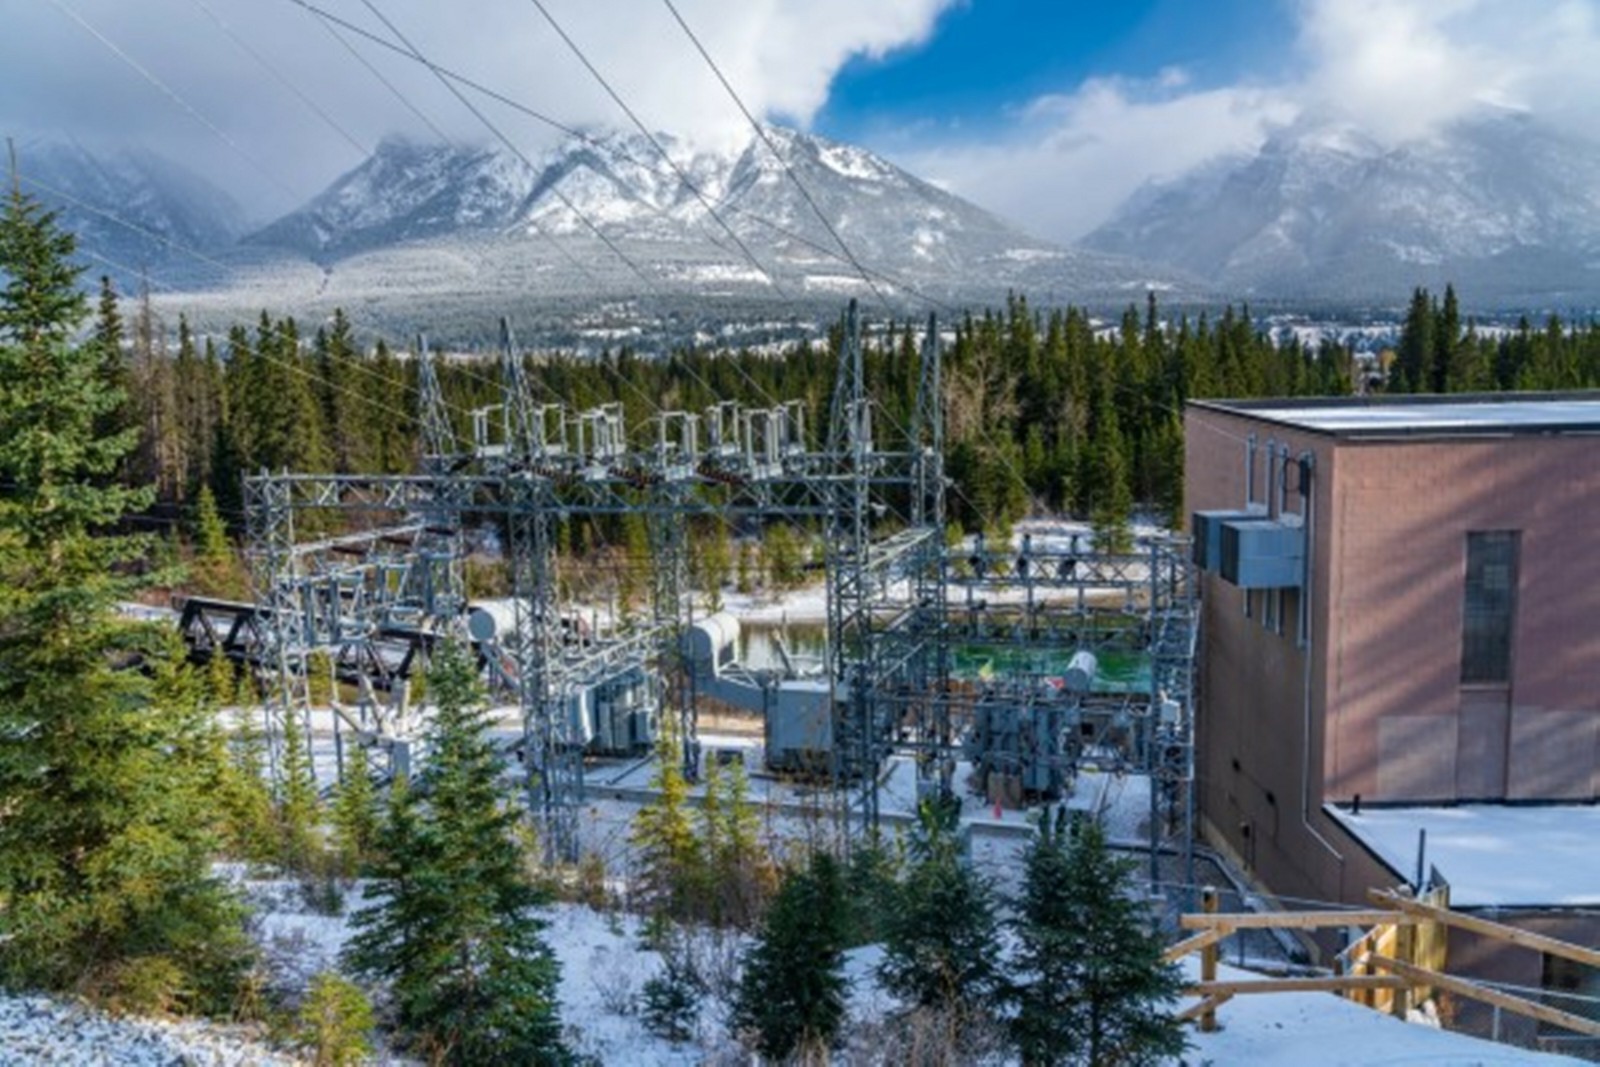 Thyssenkrupp installs 88 megawatt water electrolysis plant